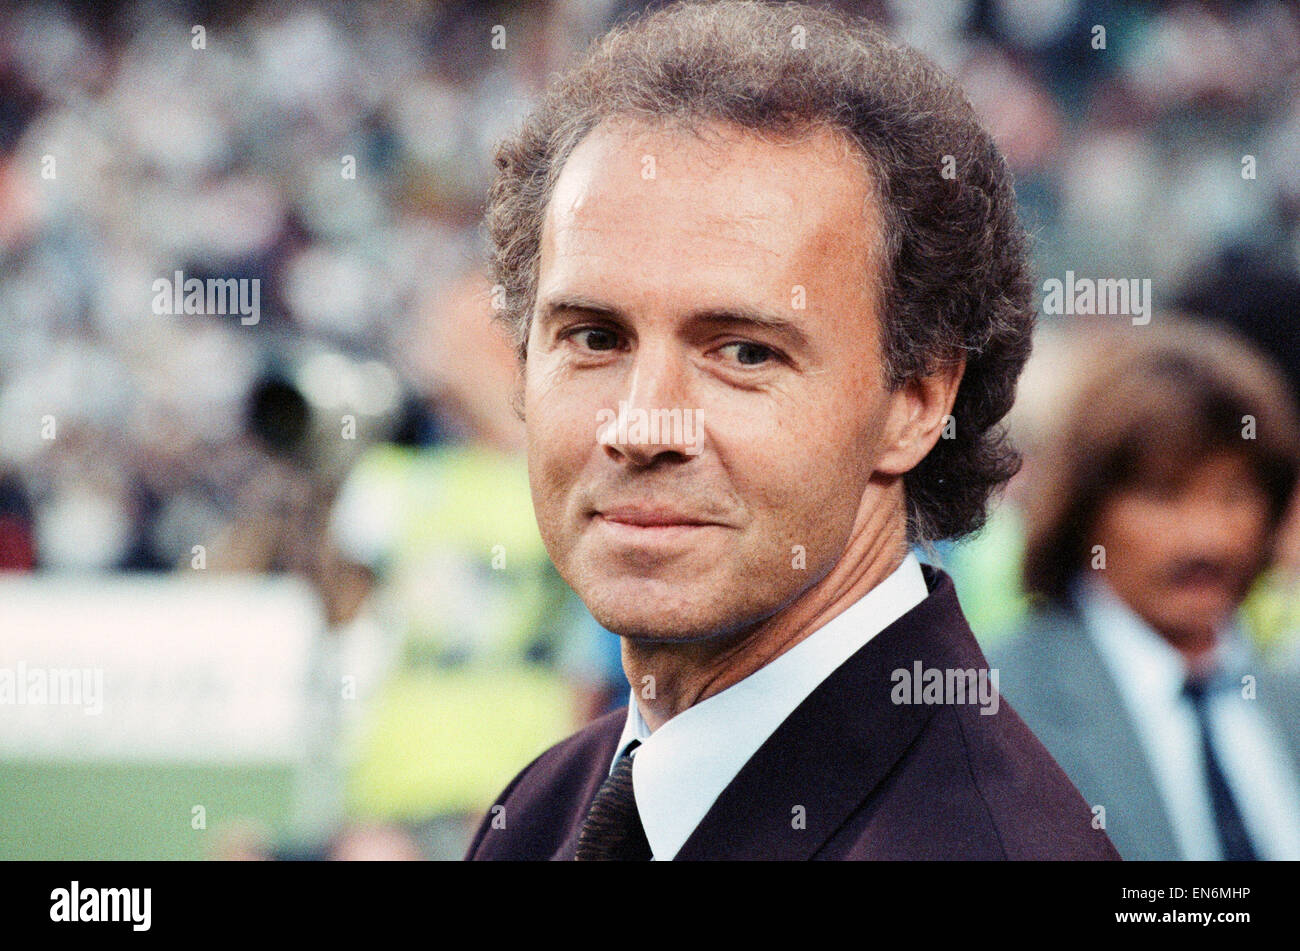 Coupe du Monde 1990 match de demi-finale le Stadio Delle Alpi à Turin, Italie. L'Allemagne de l'Ouest 1 v Angleterre 1 (Allemagne de l'Ouest a gagné sur les peines). Gestionnaire ouest-allemand Franz Beckenbauer. 4e juillet 1990. Banque D'Images